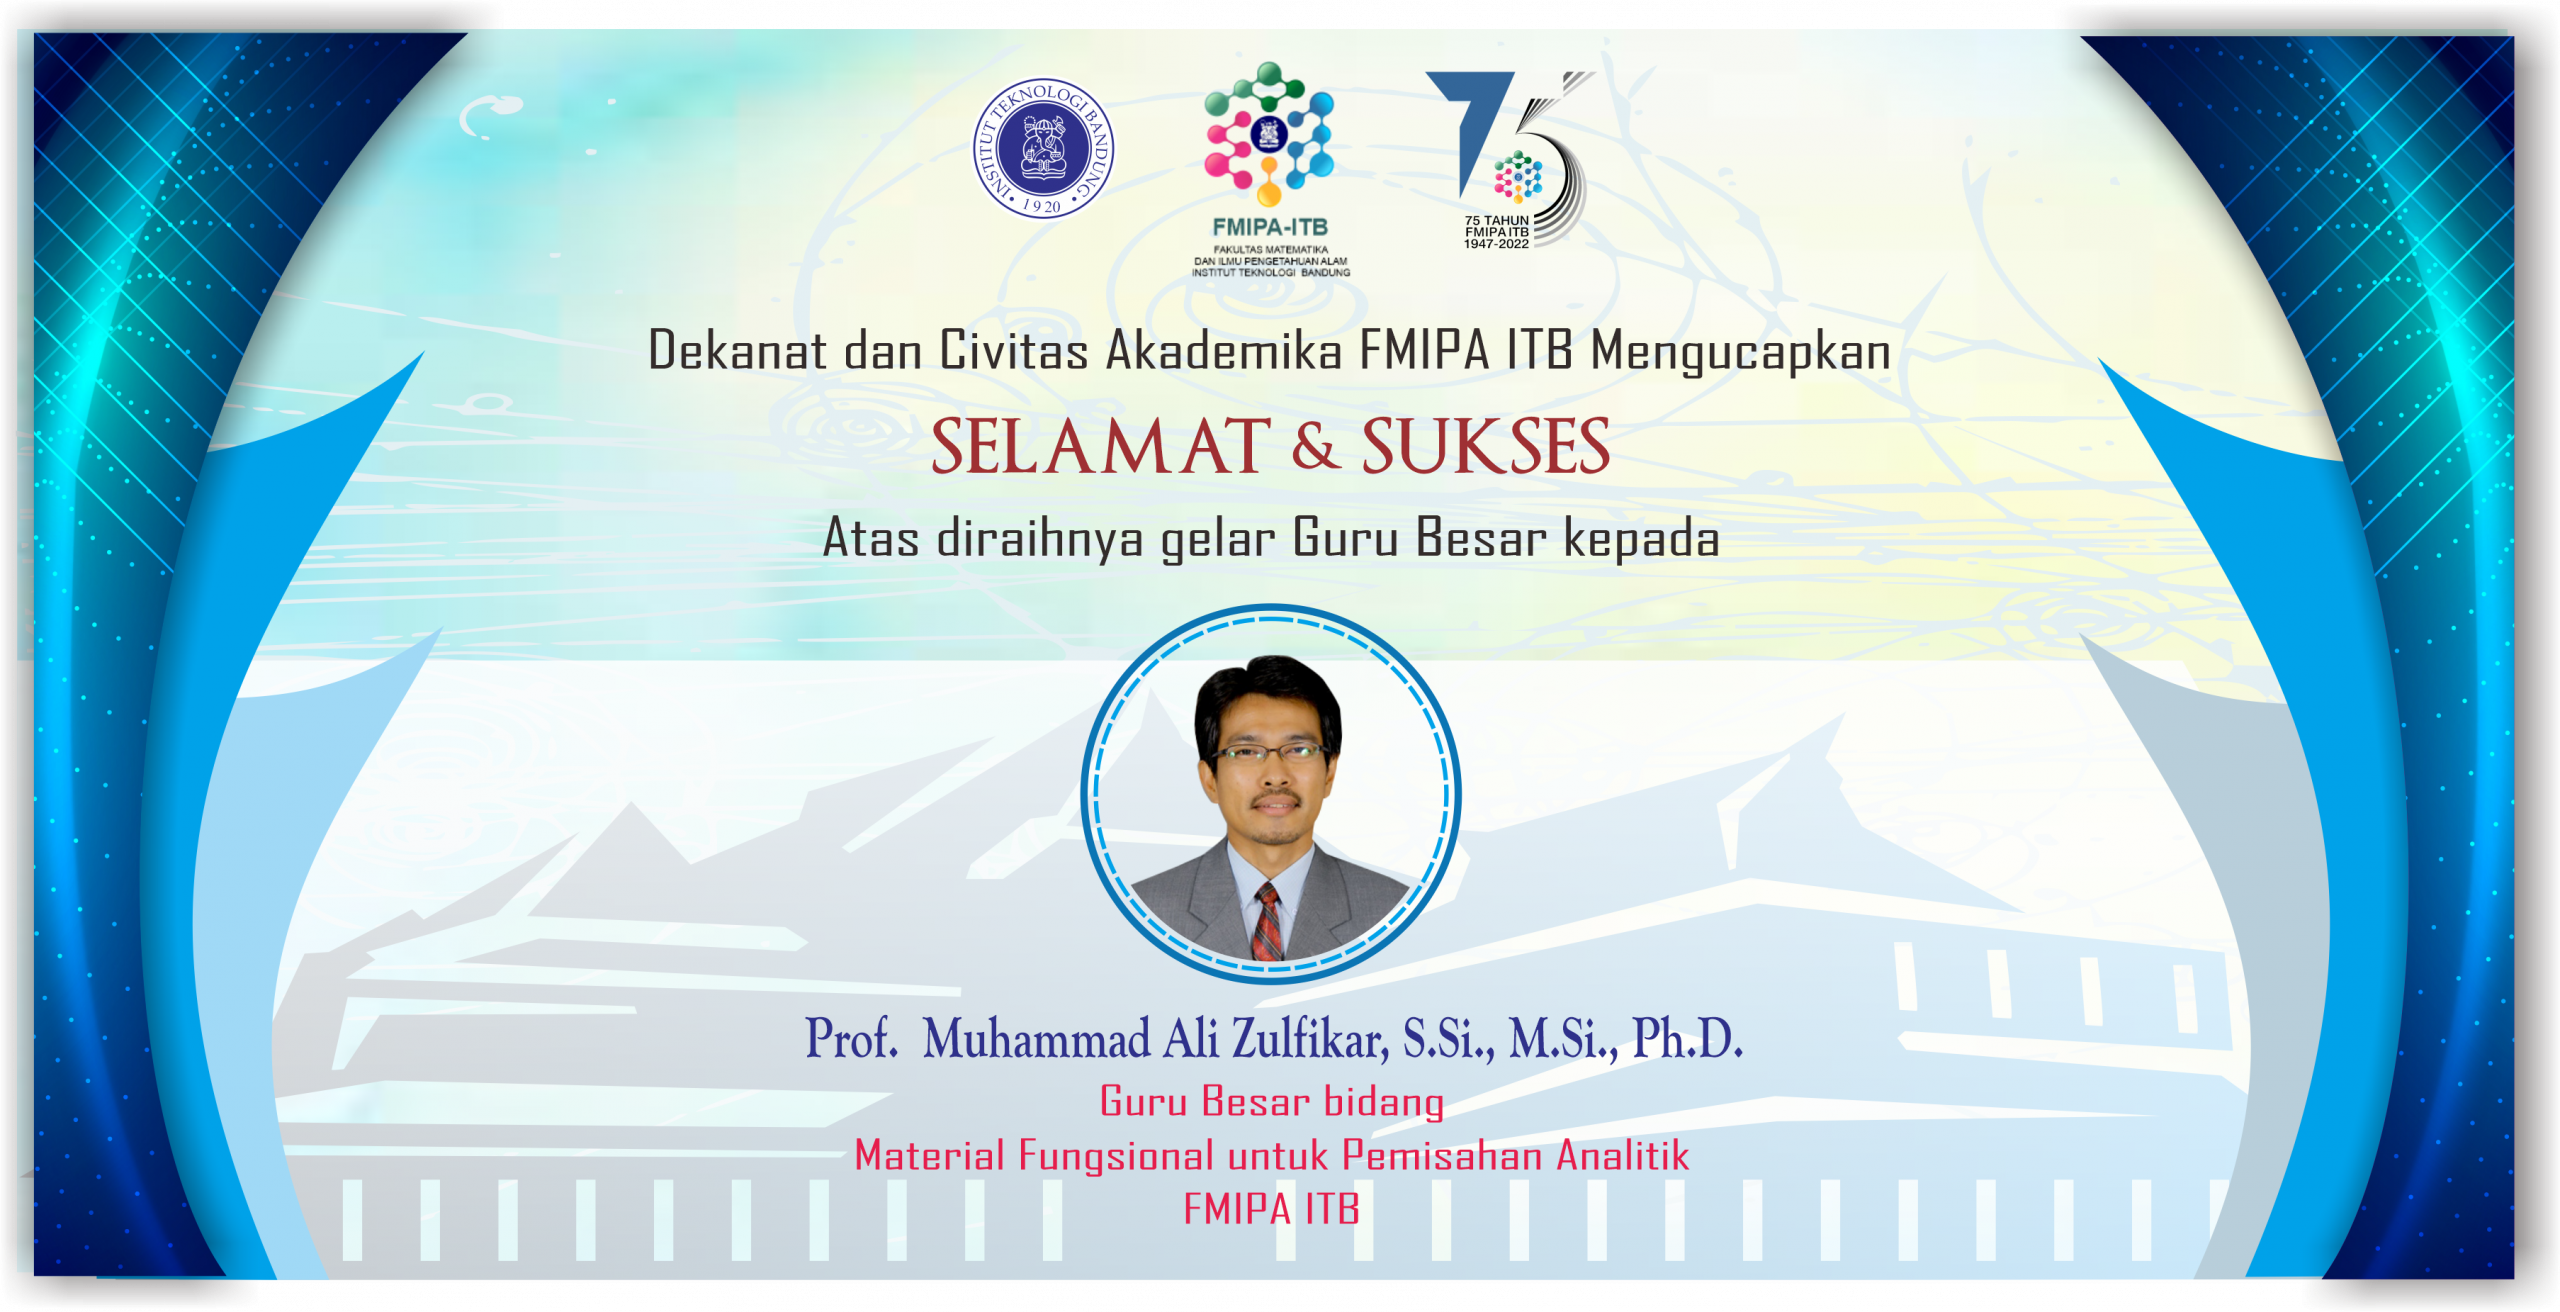 Gelar Guru Besar bidang Material Fungsional untuk Pemisahan Analitik, Prof.  Muhammad Ali Zulfikar, S.Si., M.Si., Ph.D.